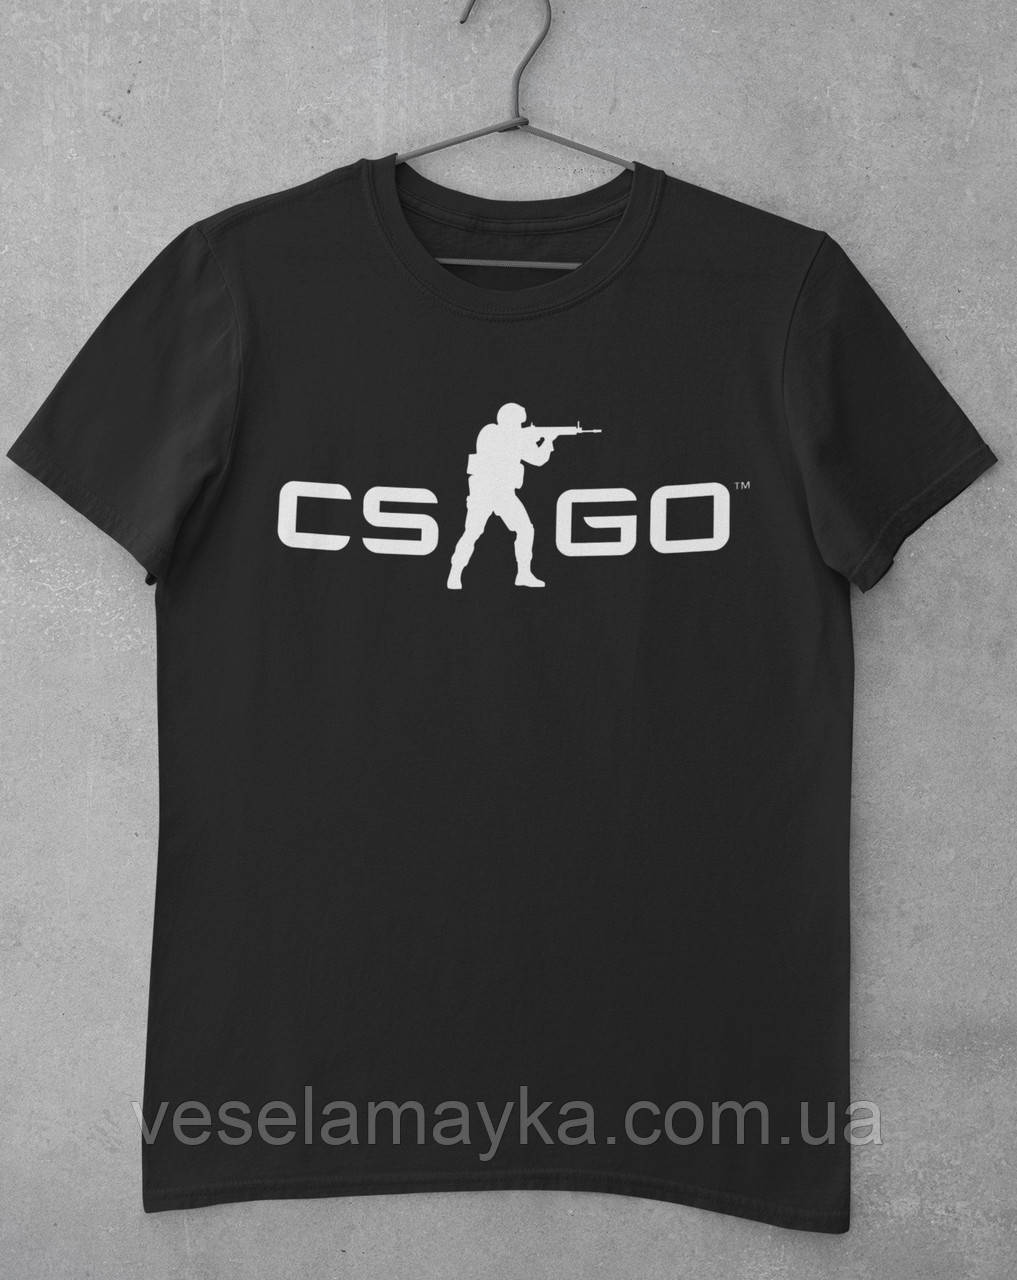 Футболка CS GO (Counter Strike)